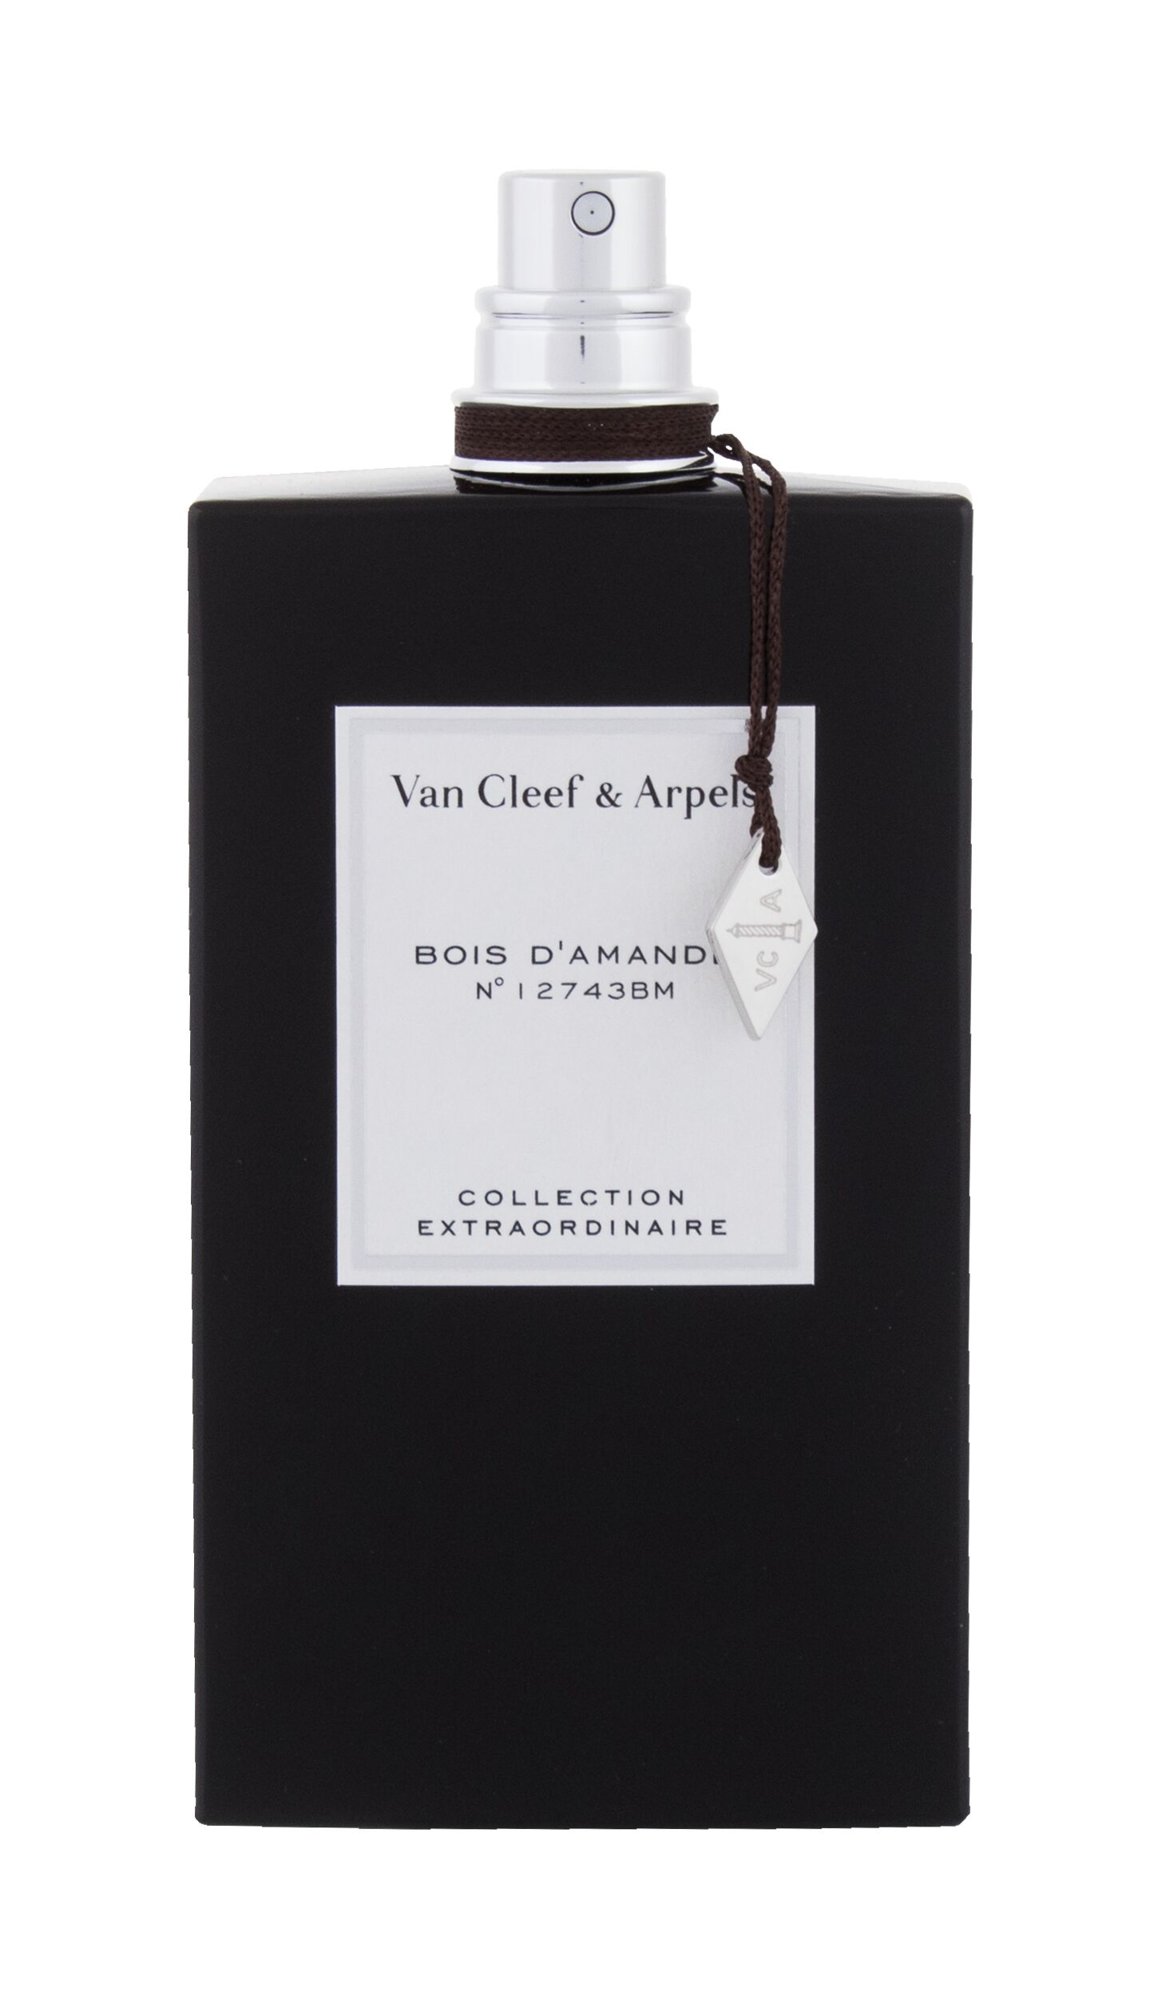 Van Cleef & Arpels Collection Extraordinaire Bois d´Amande 20 ml NIŠINIAI kvepalų mėginukas (atomaizeris) Unisex EDP